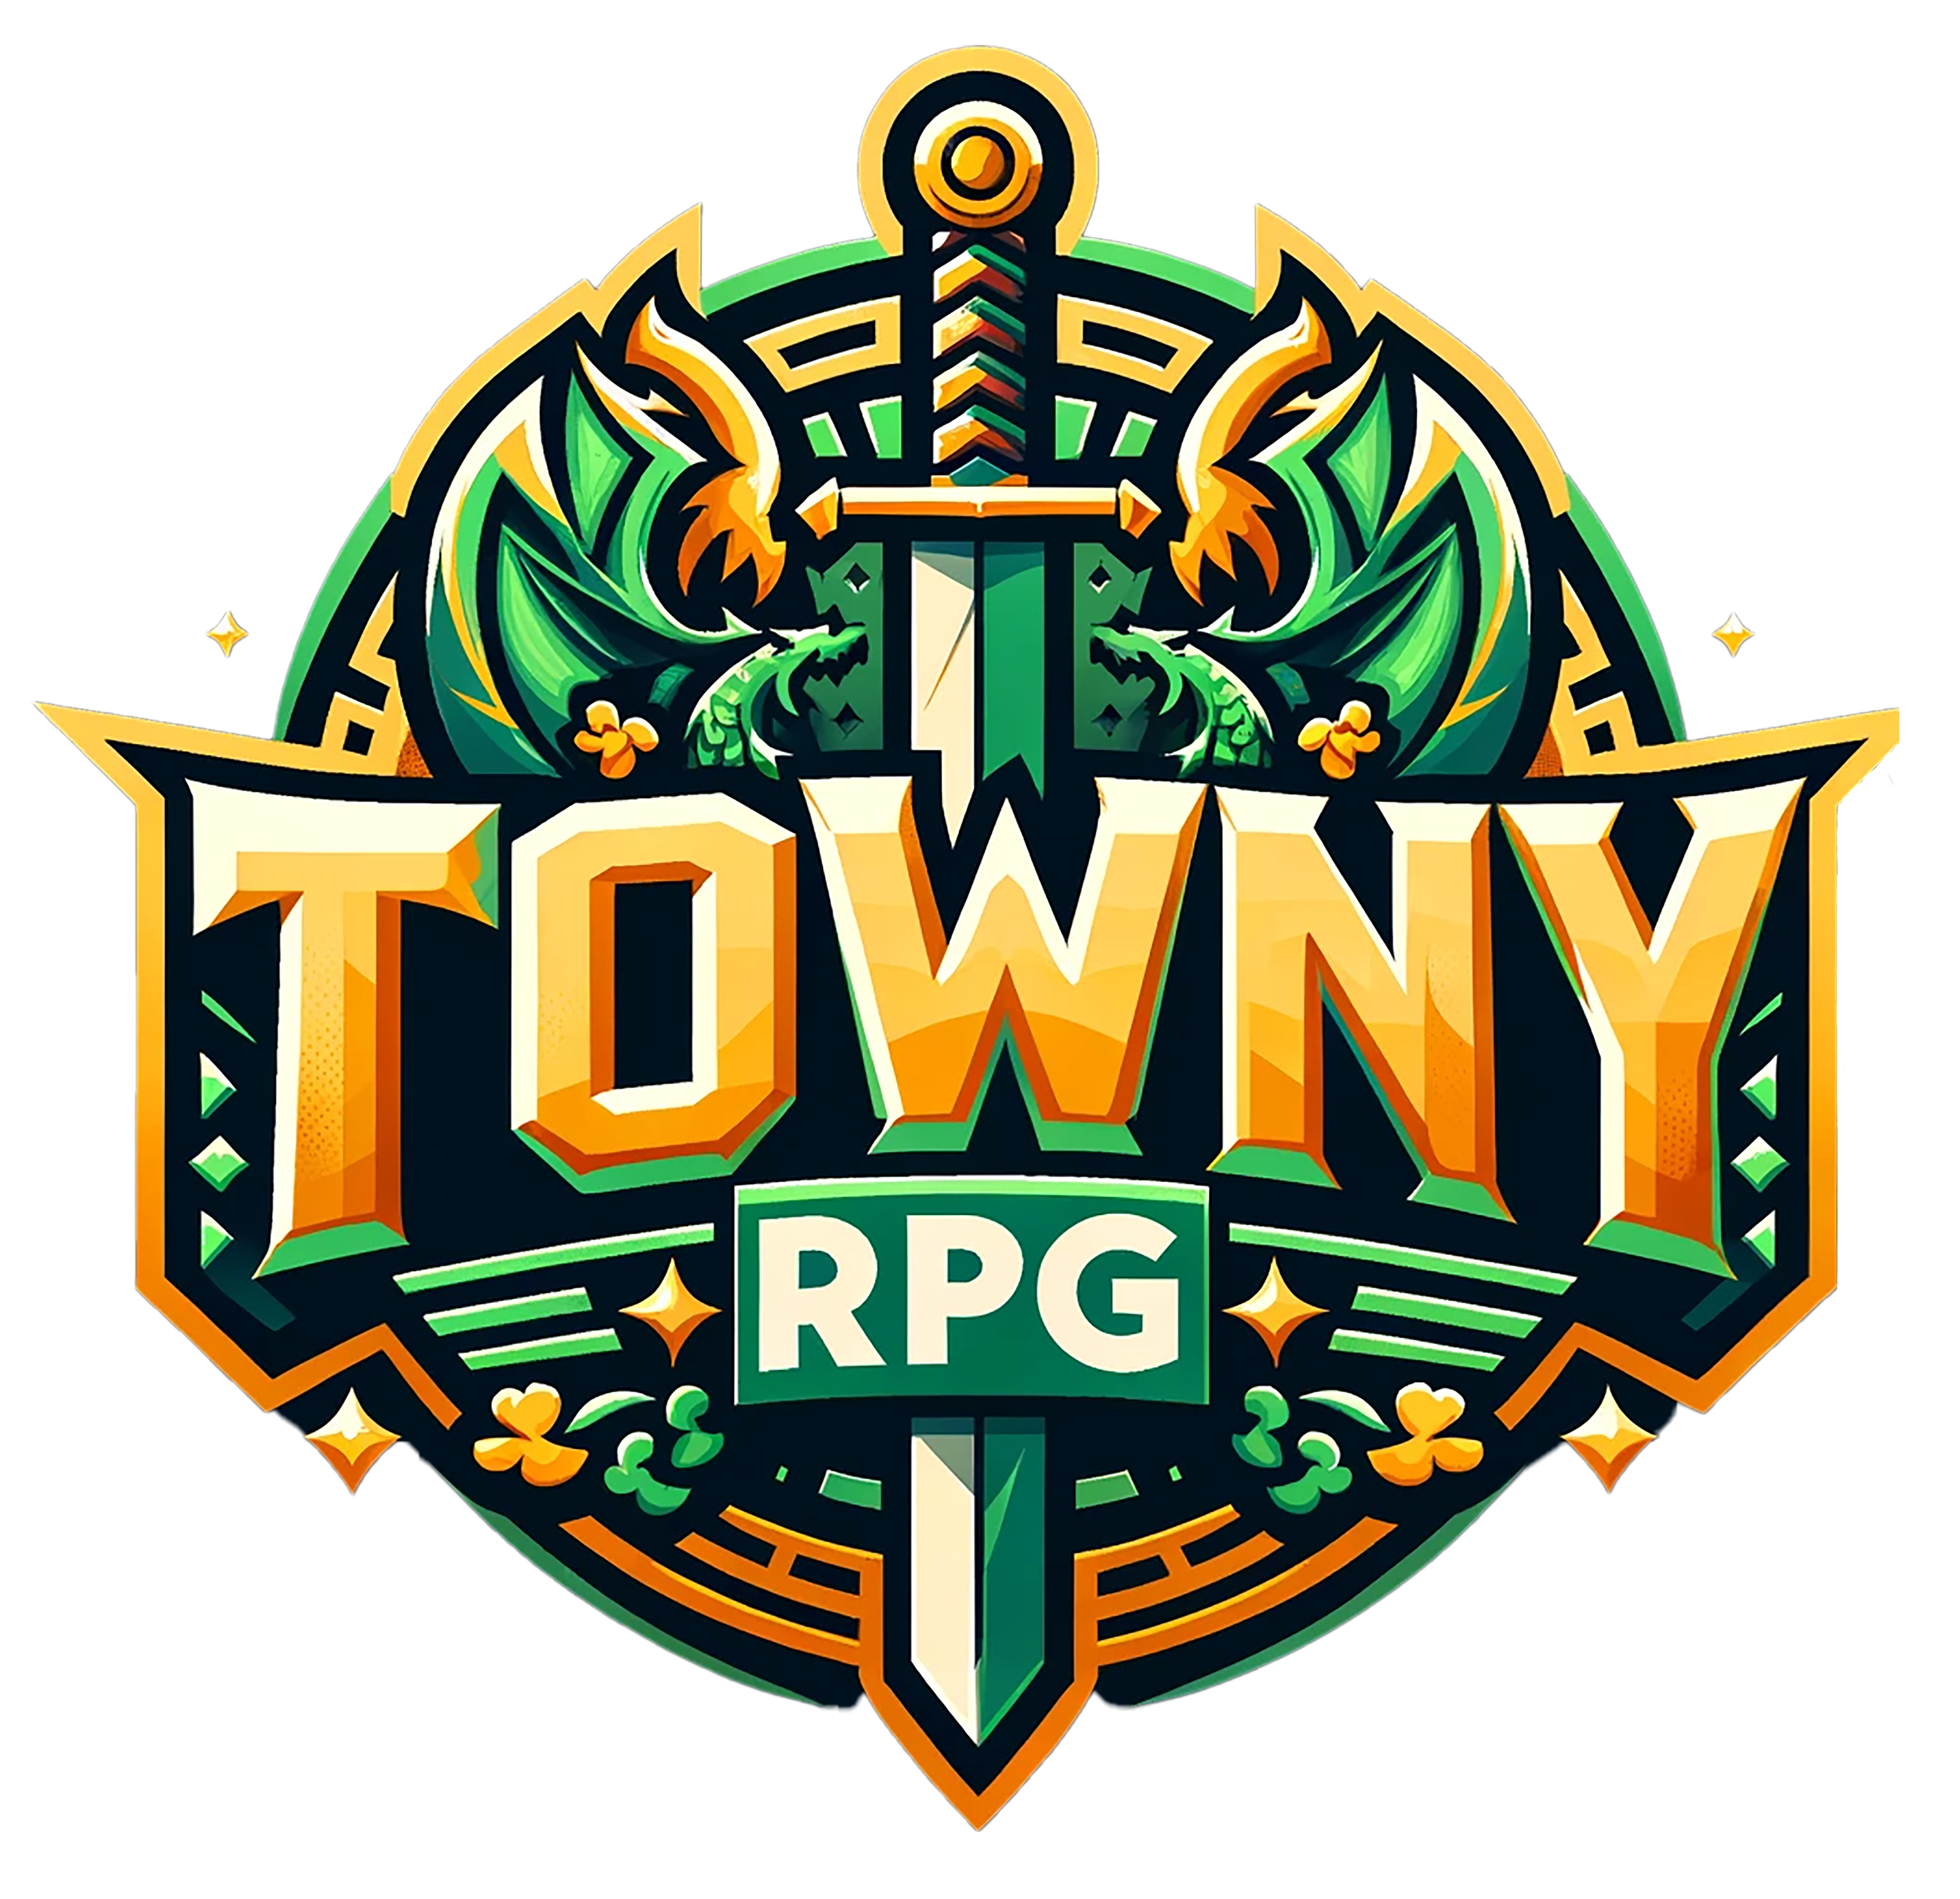 Towny RPG - Logo